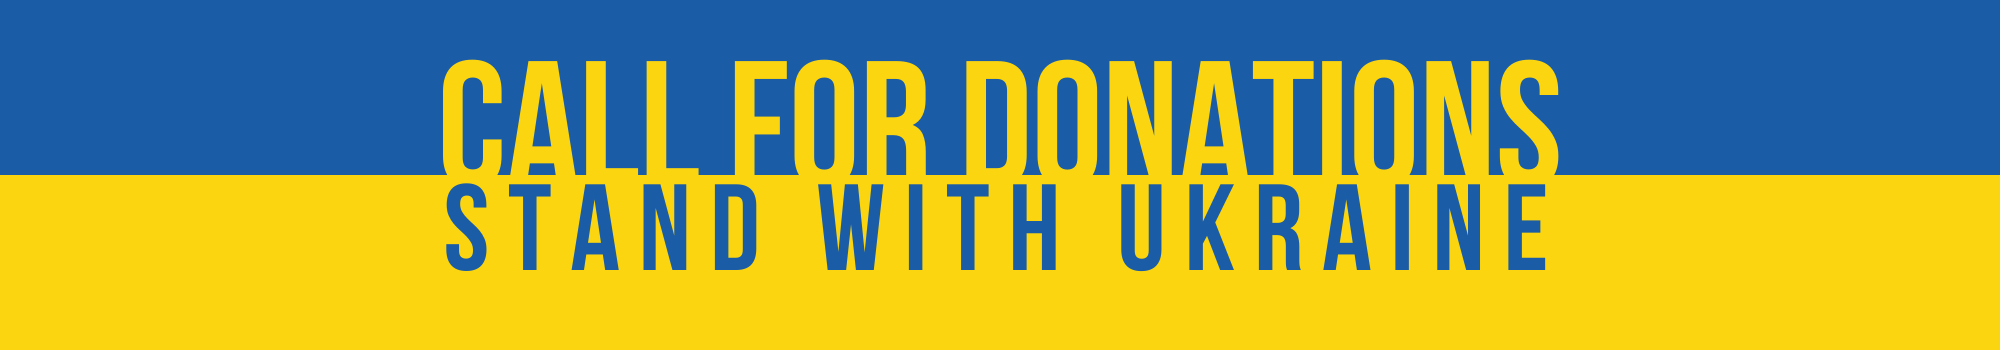 donations ukraine